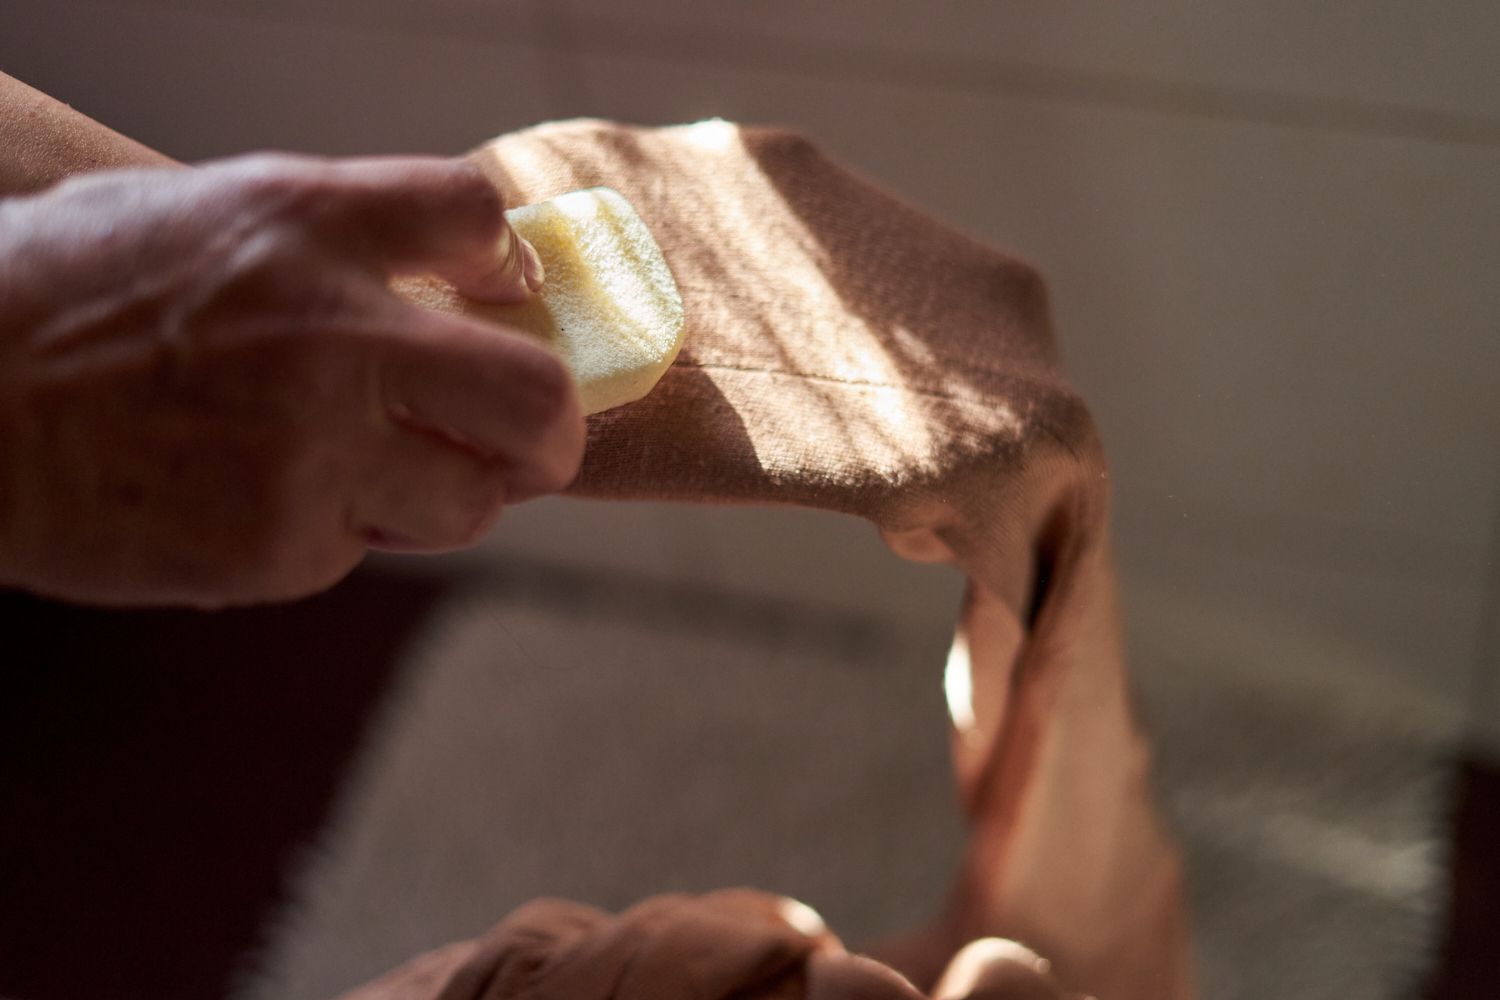 manos frotan suavemente una piedra pómez de color crema en el brazo del jersey marrón para eliminar las pastillas